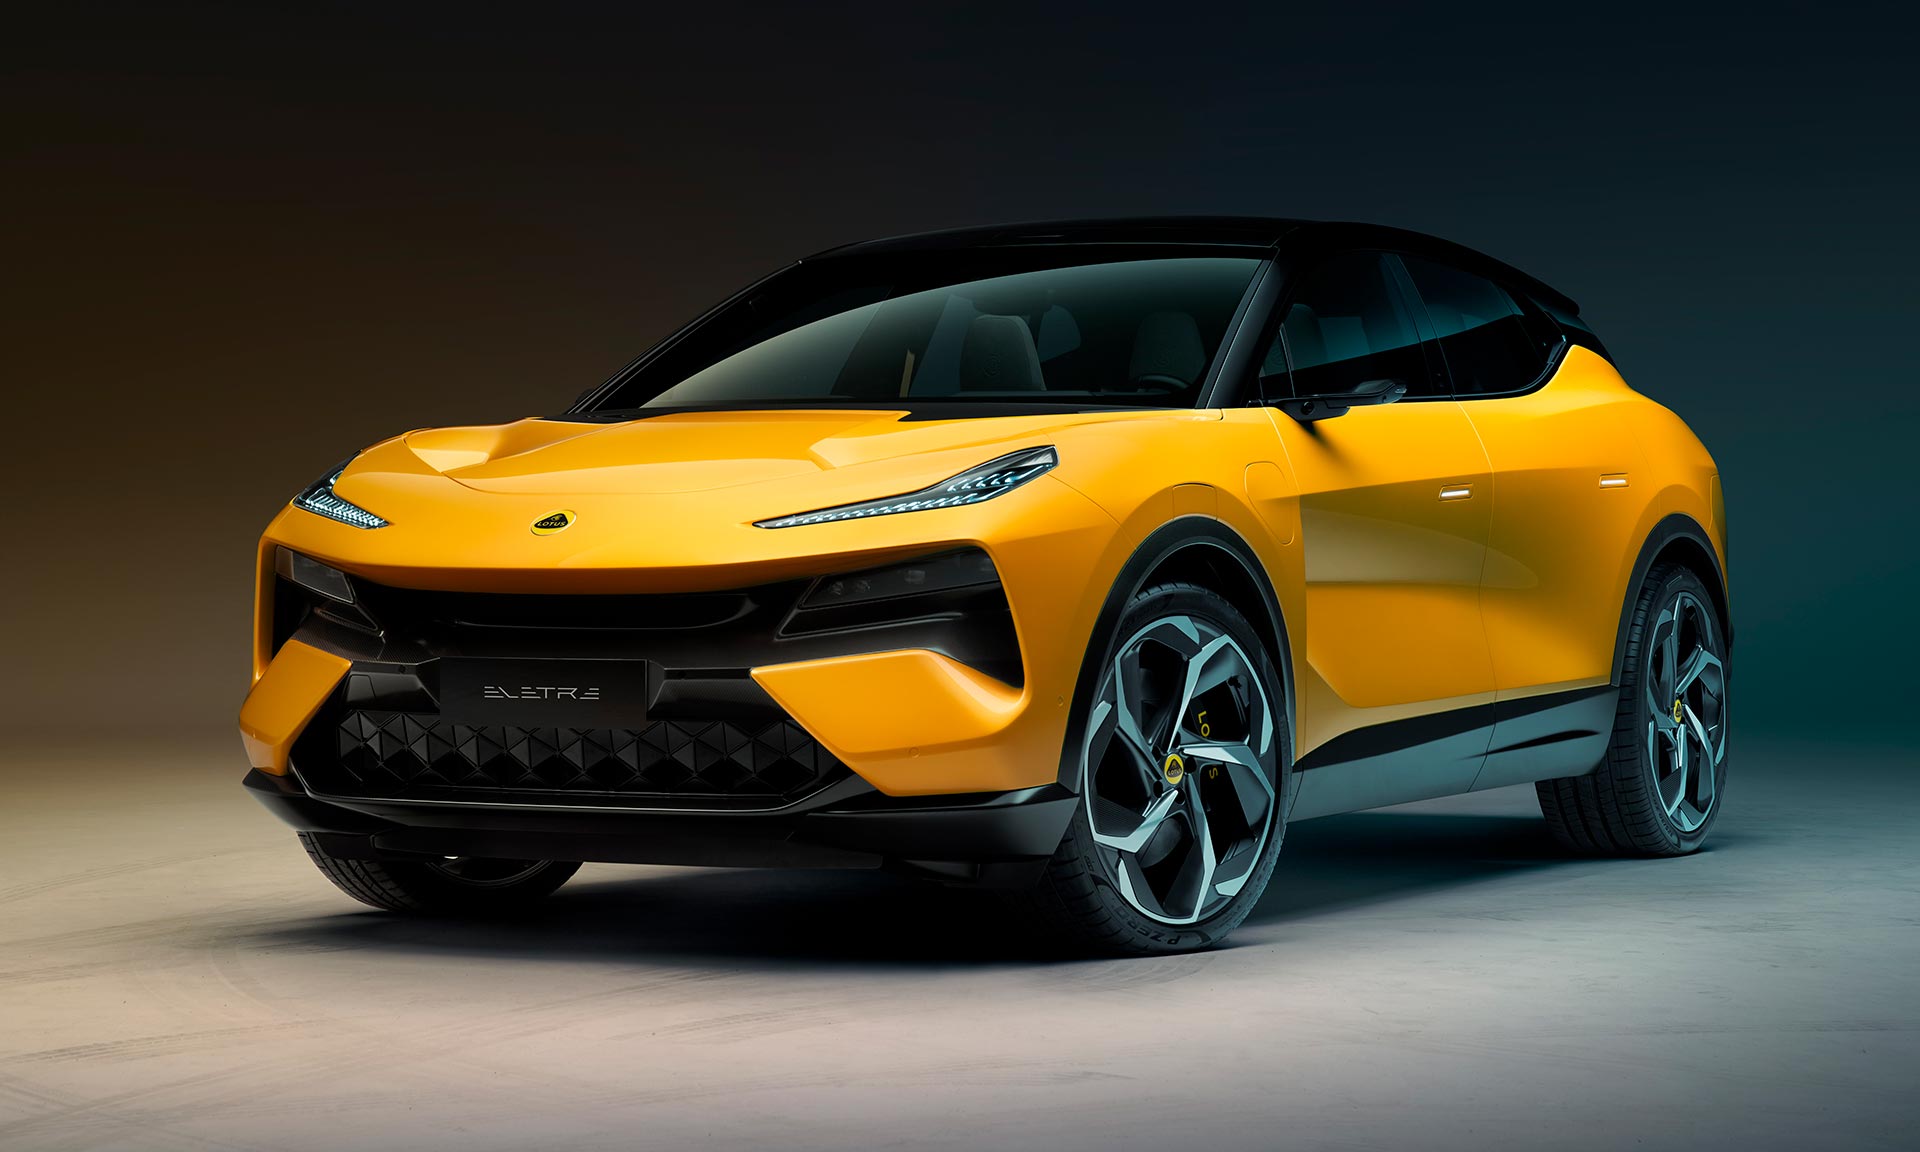 Lotus představil hyper SUV se jménem Eletre a designem svých sportovních vozů